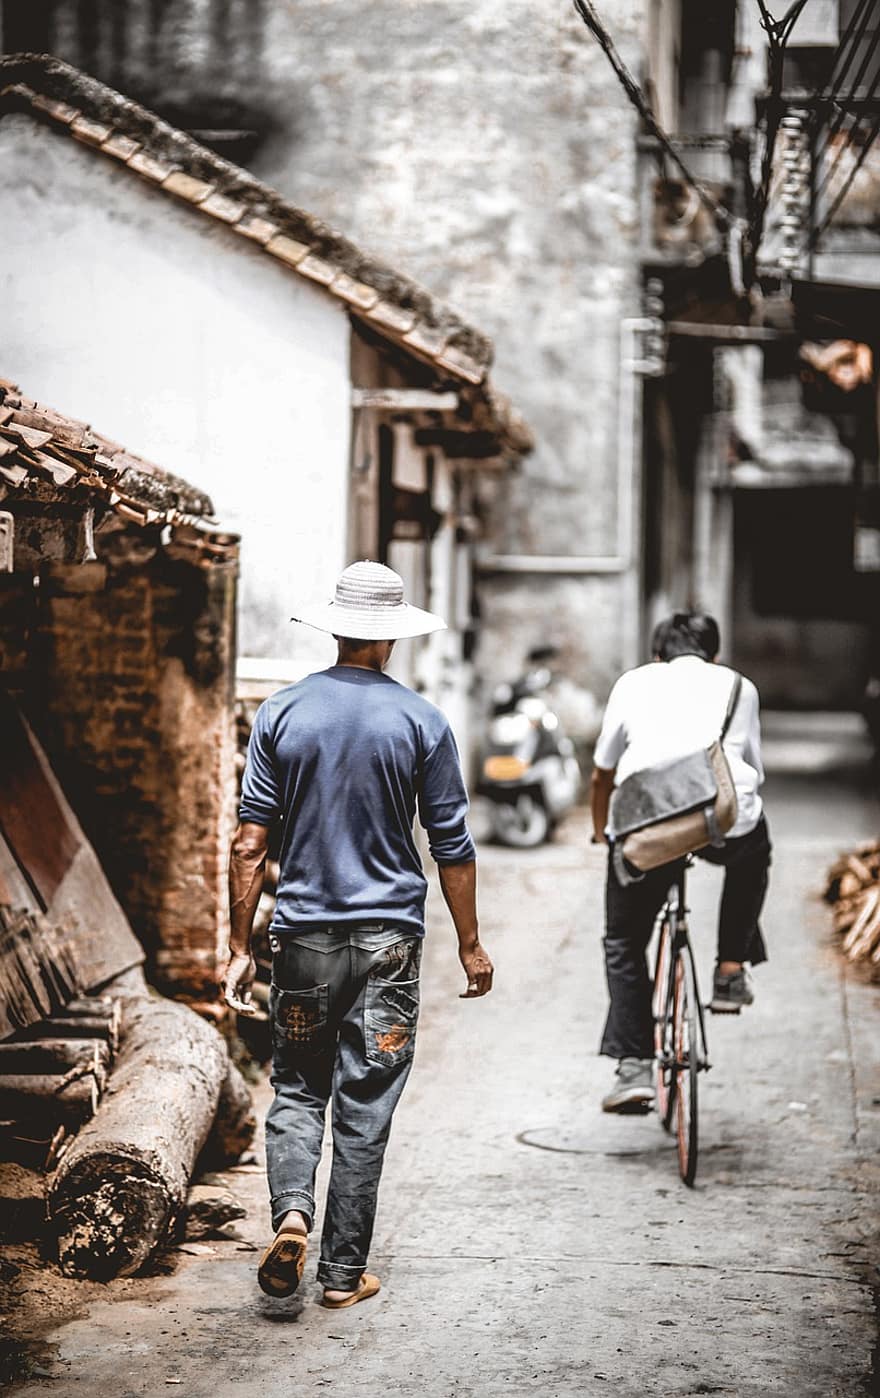 شارع ، اشخاص ، منازل ، البنايات ، الحضاري ، زقاق ، الصين ، تصوير الشارع ، رجل